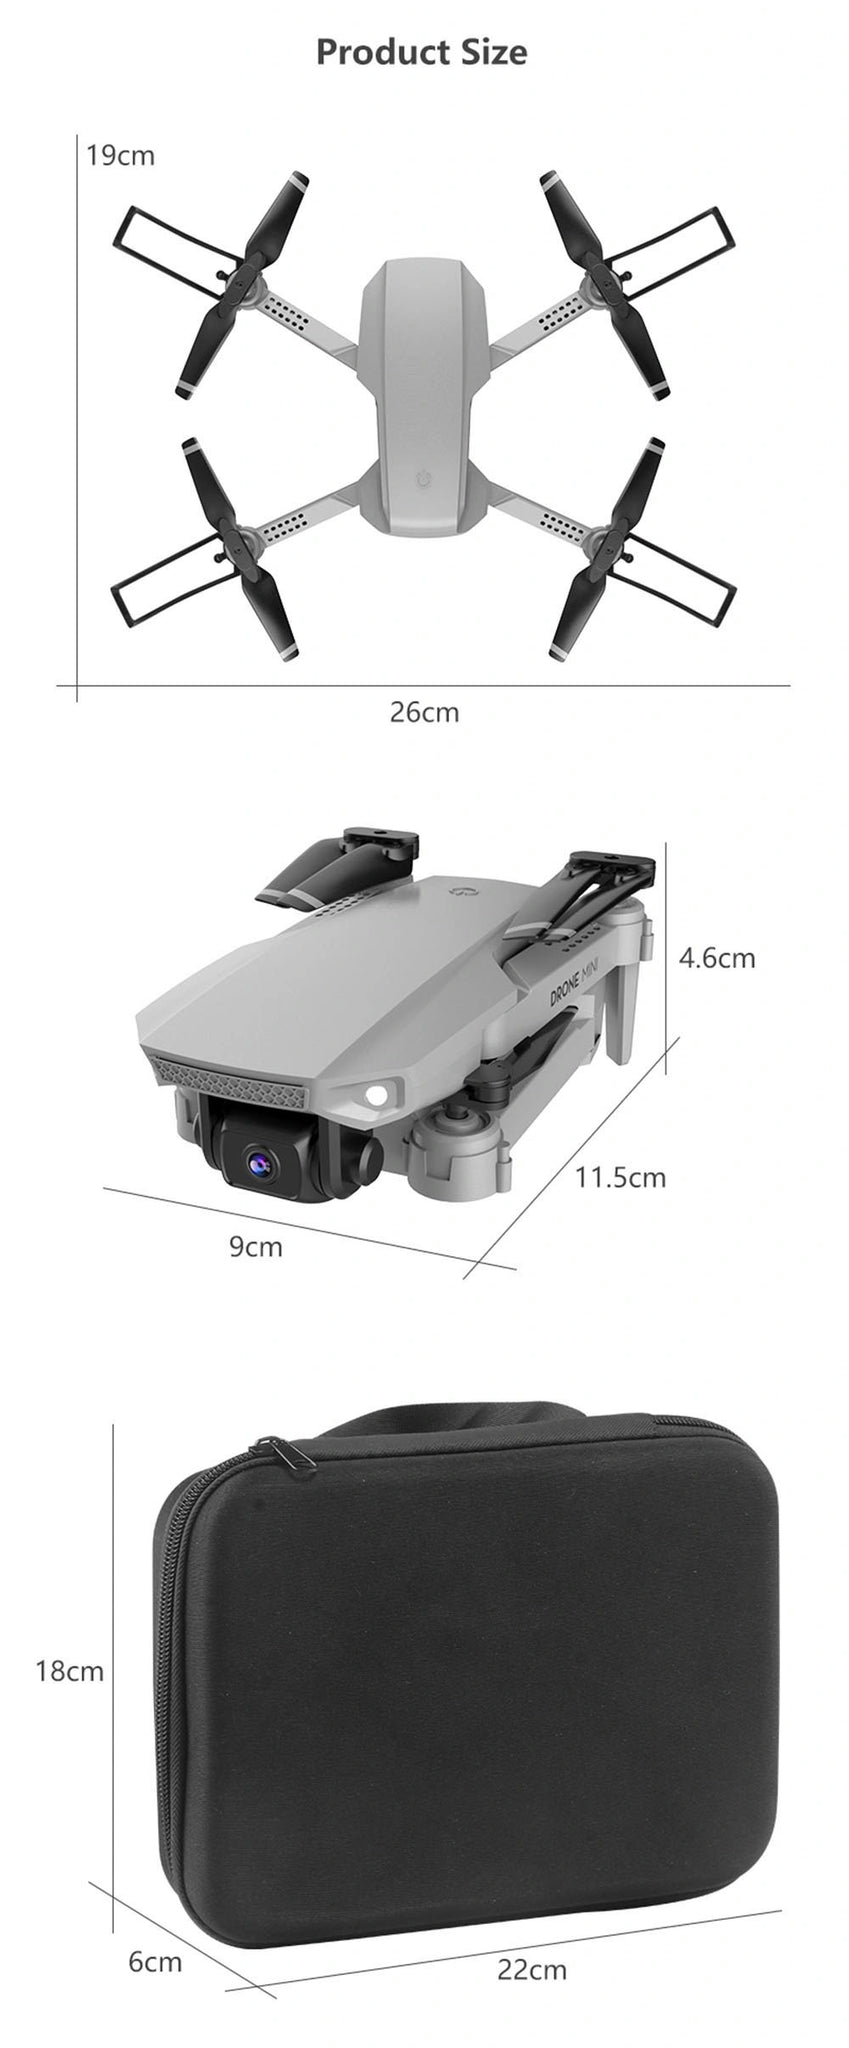 E88 Drone, product size 19cm 26cm n 4.6cm